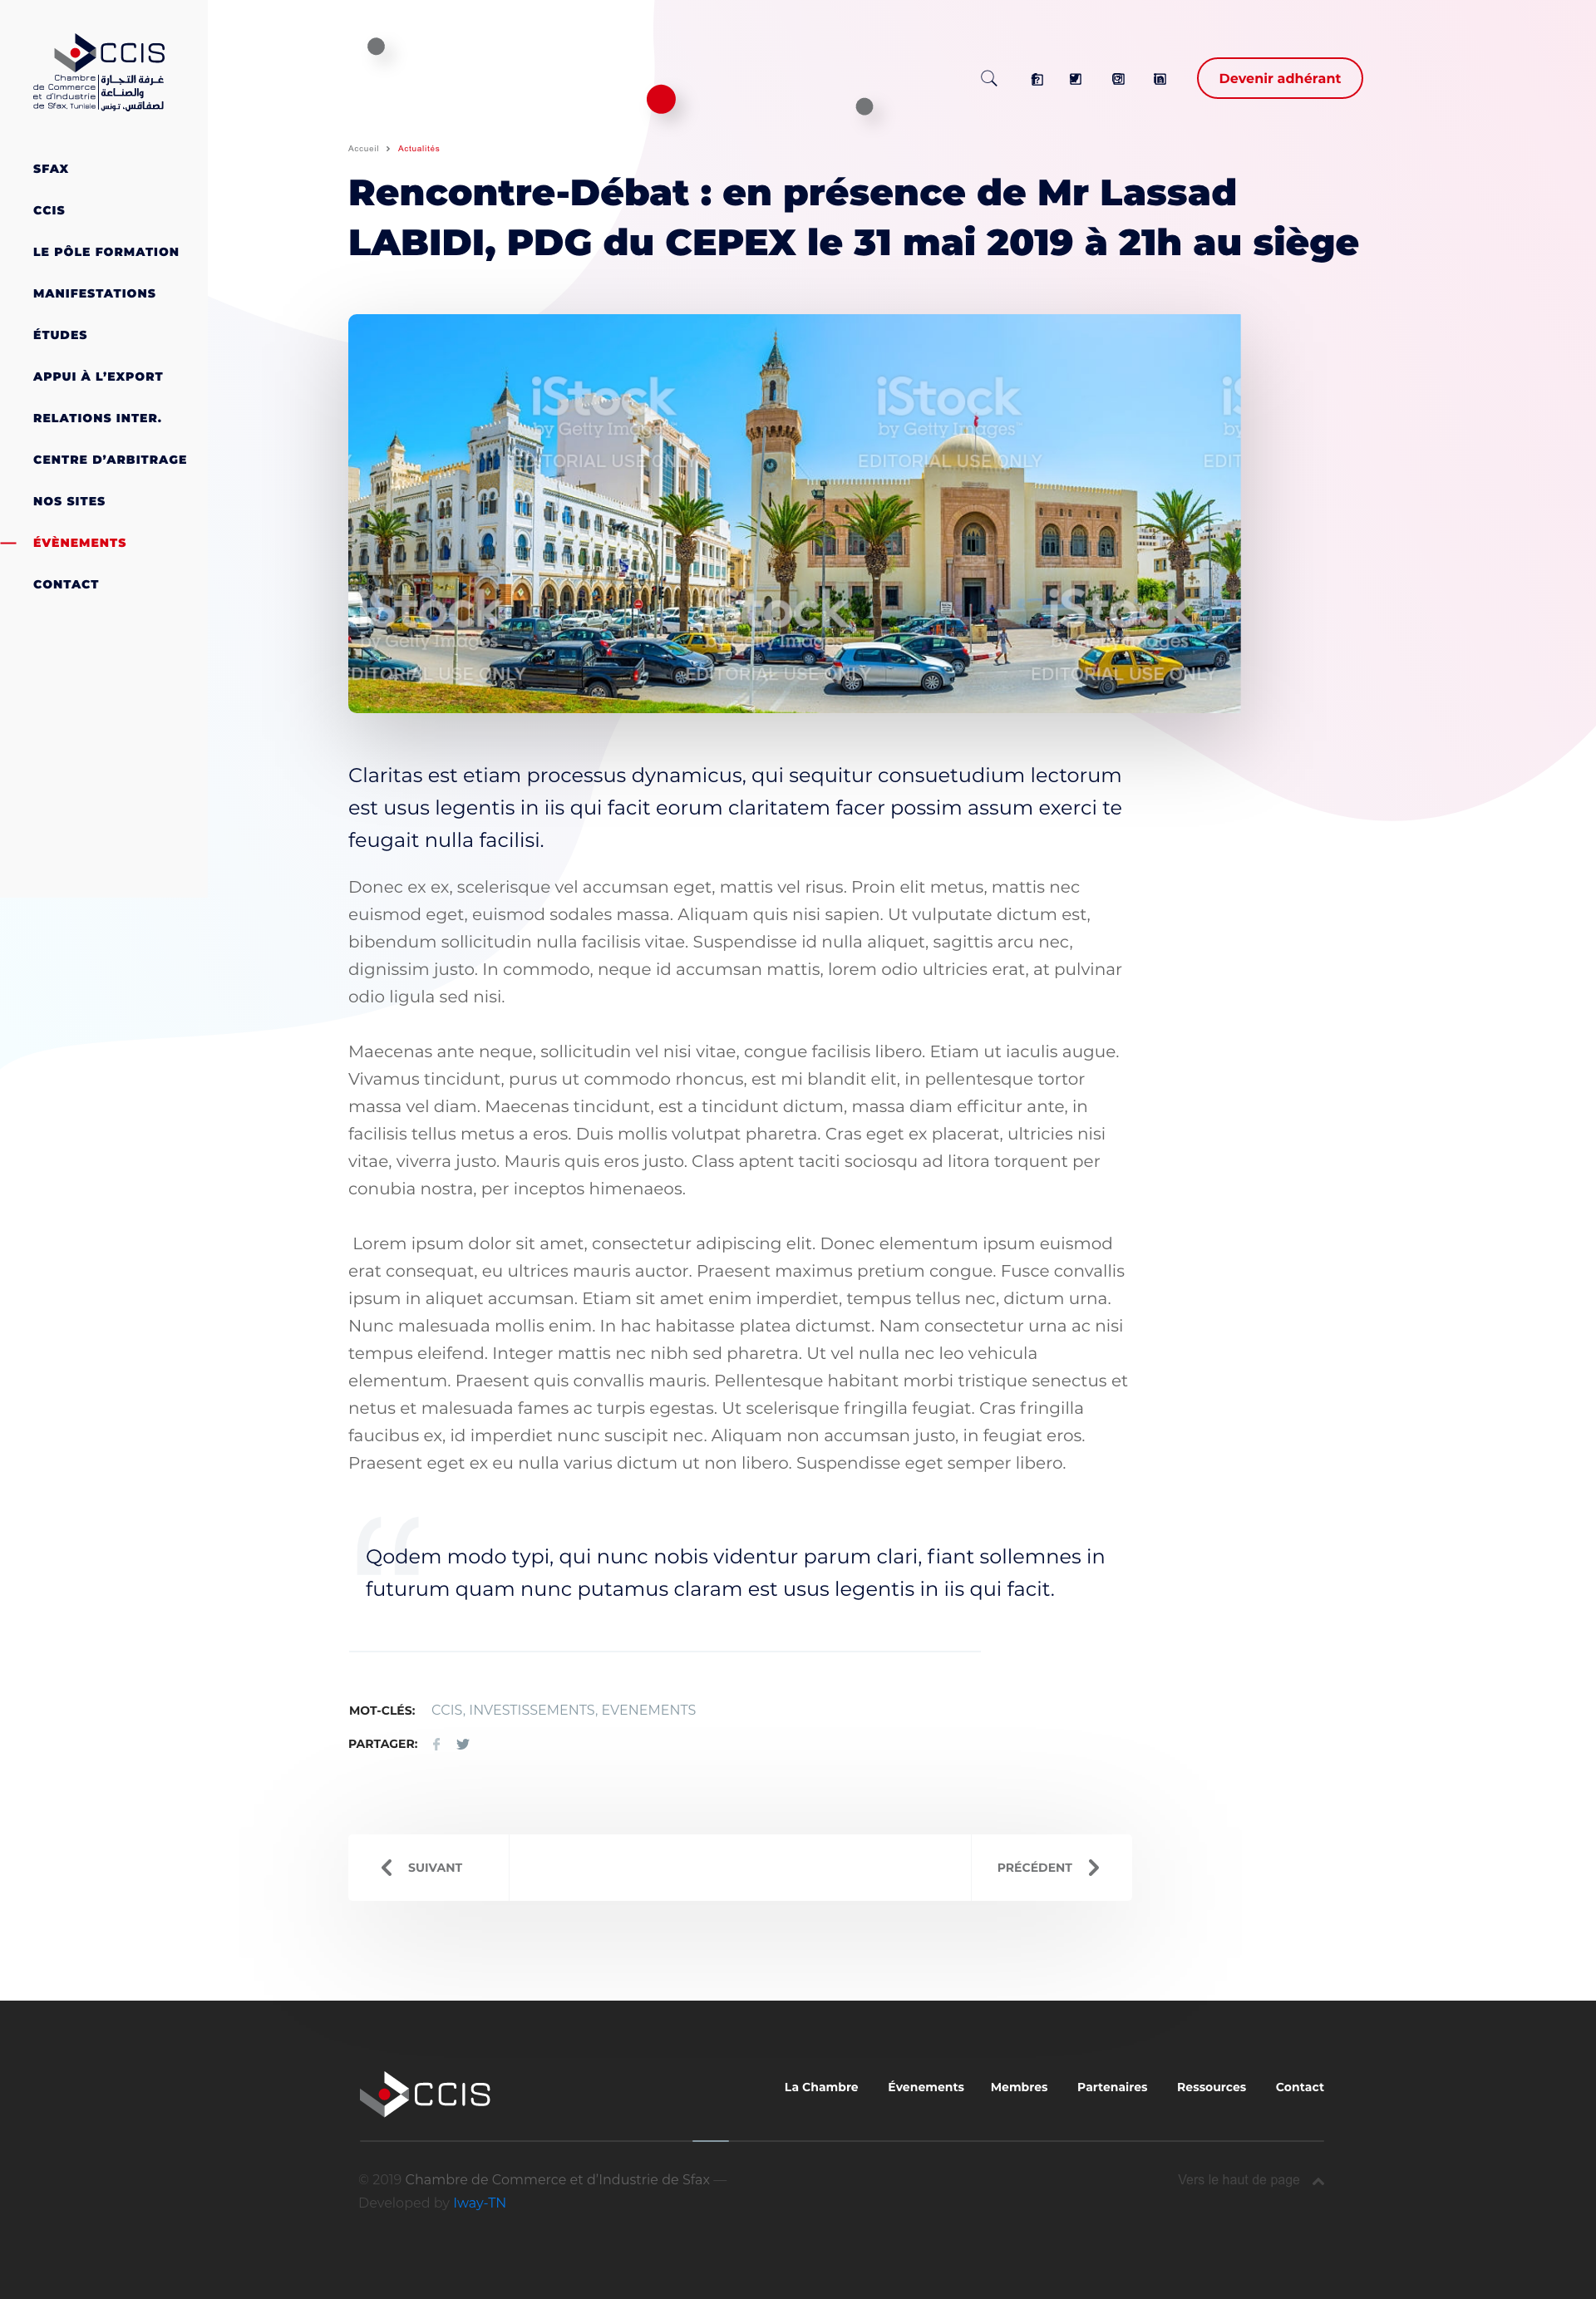 Chambre de Commerce et d'Industrie de Sfax